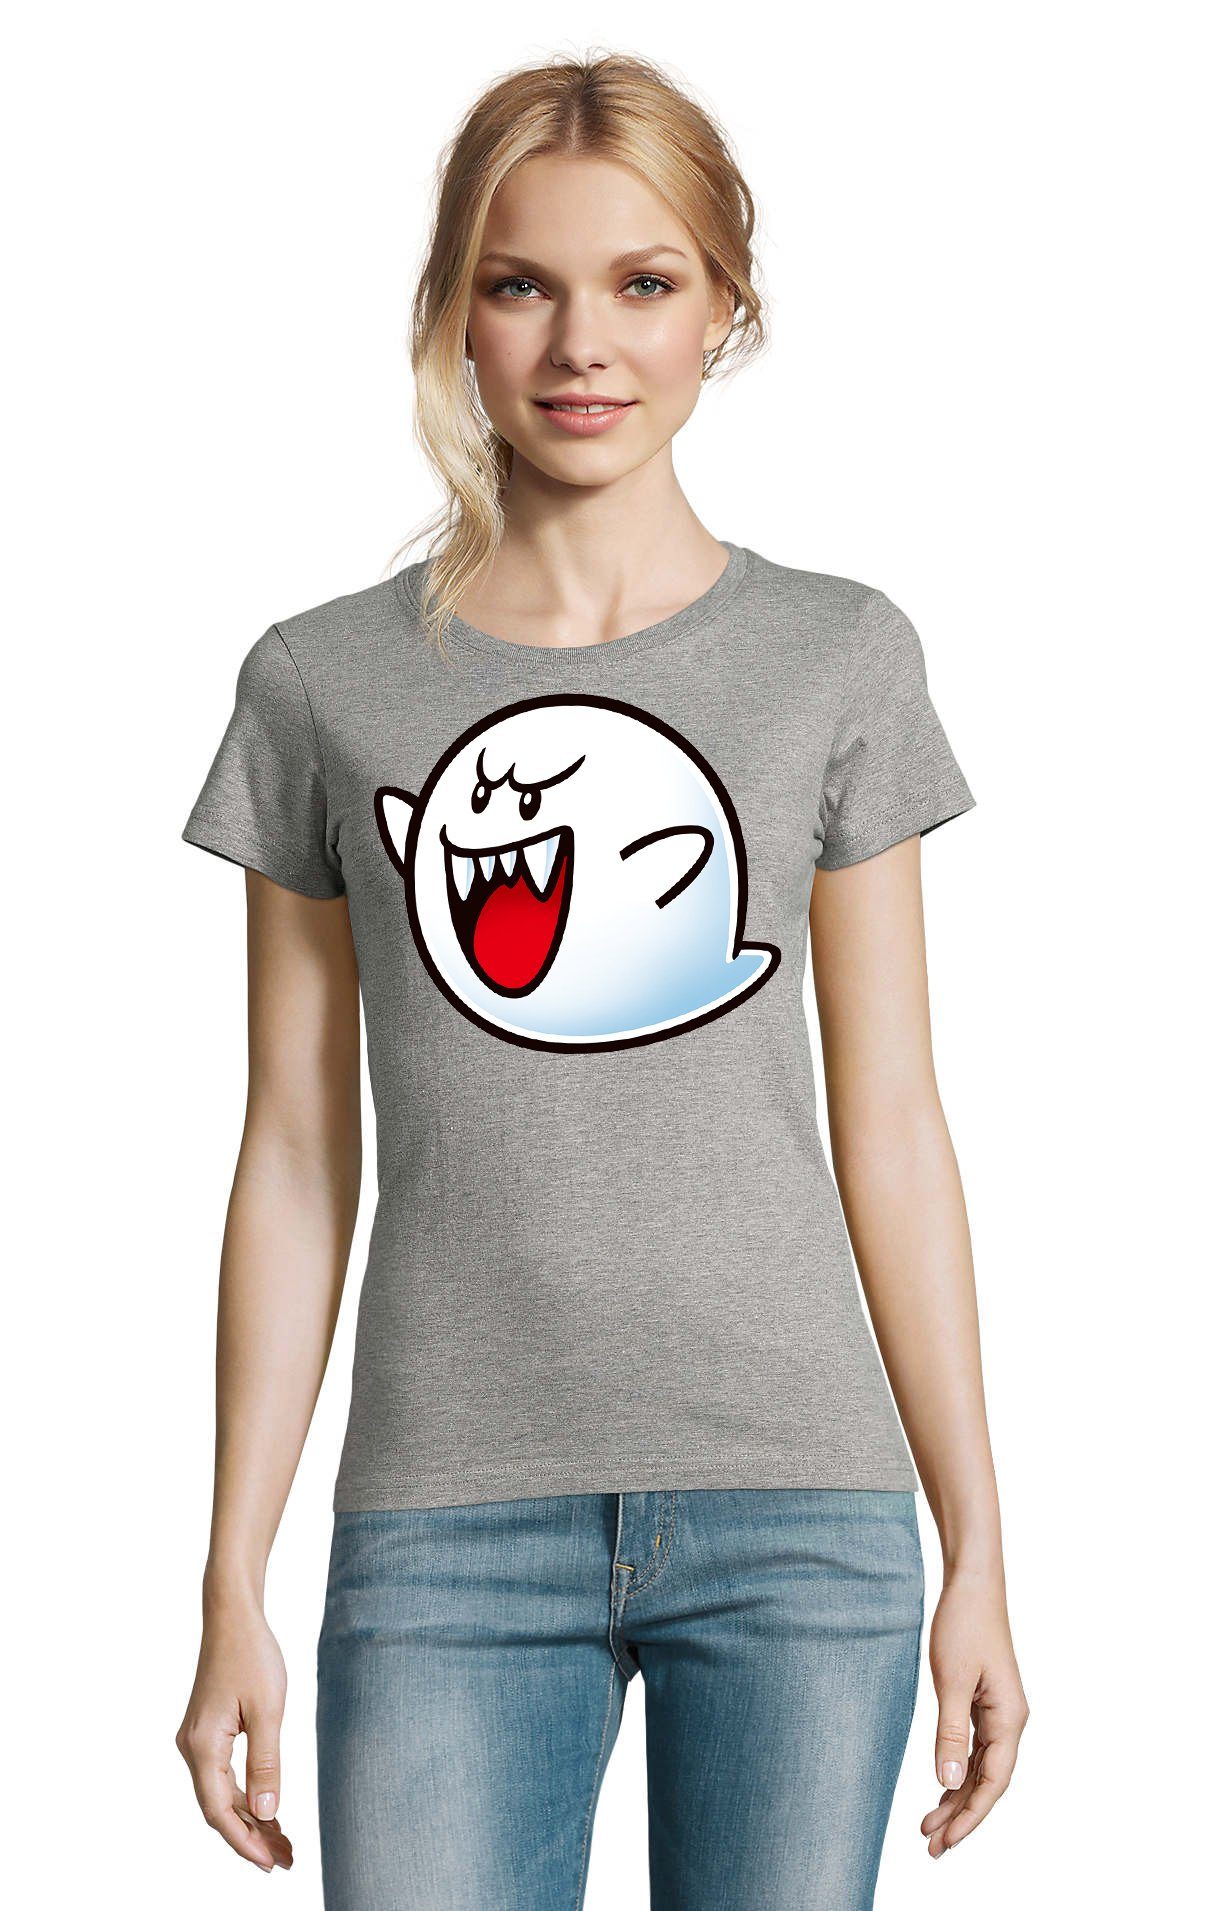 Blondie & Brownie T-Shirt Damen Geist Konsole Grau Gespenst Nintendo Mario Boo Super